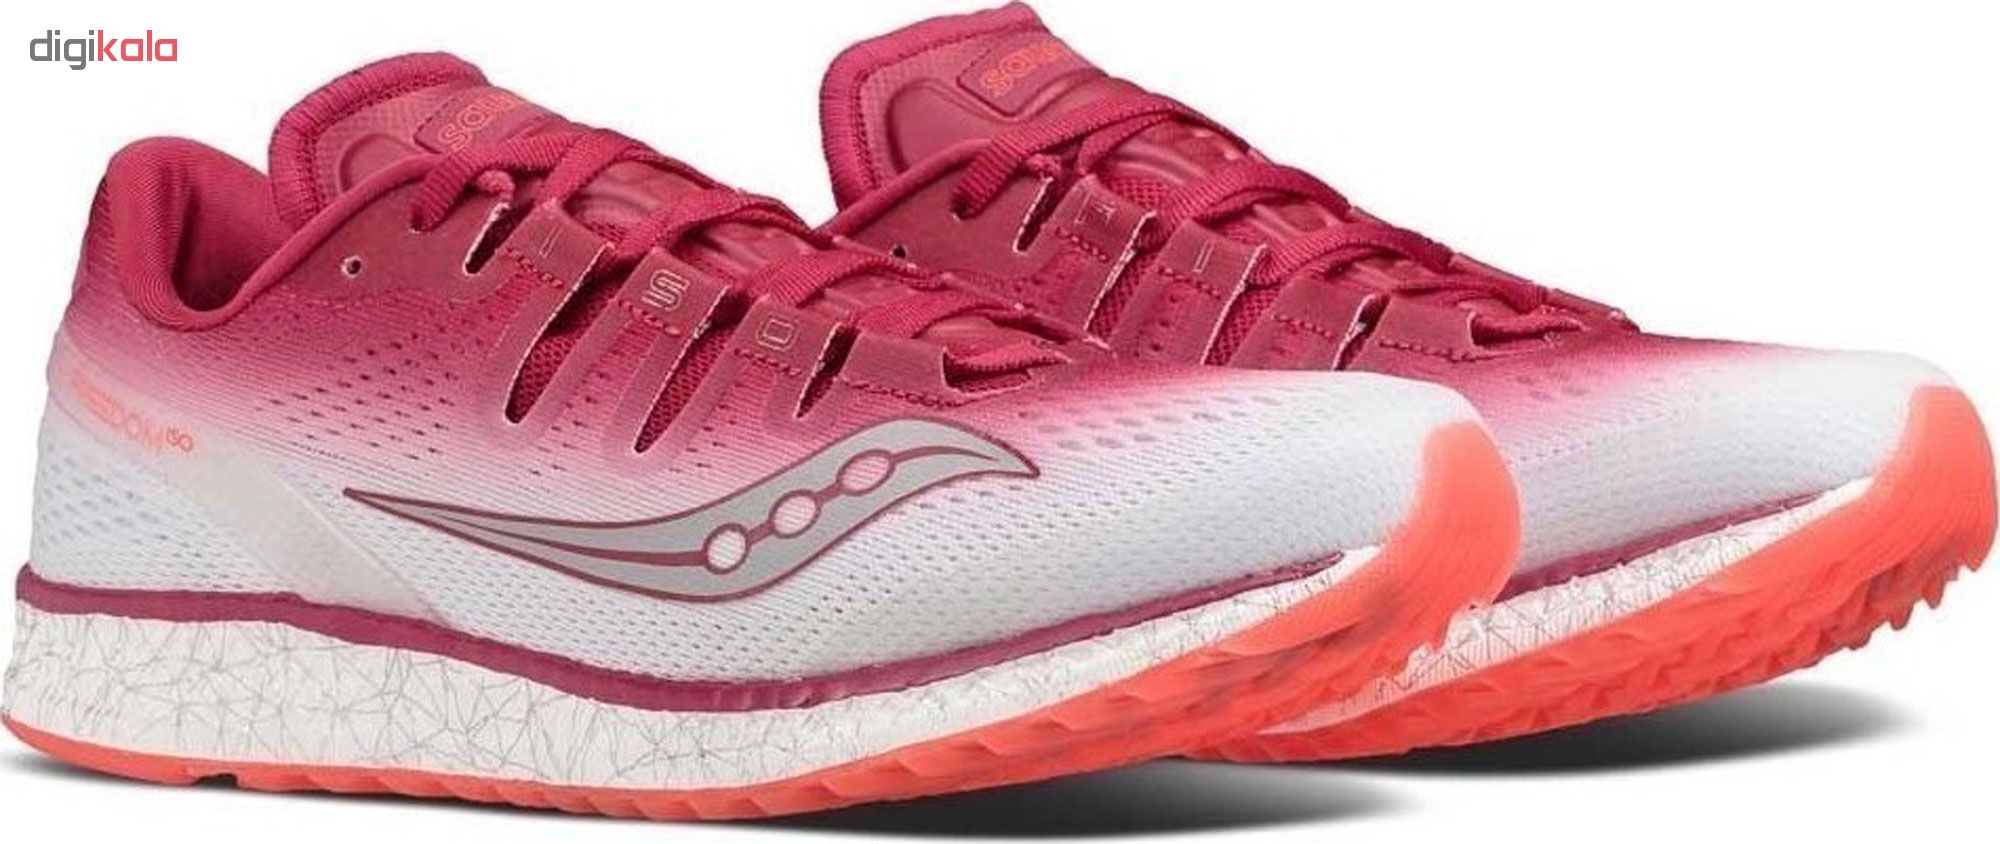 کفش مخصوص دویدن زنانه ساکنی مدل Freedom Iso کد S10355-5